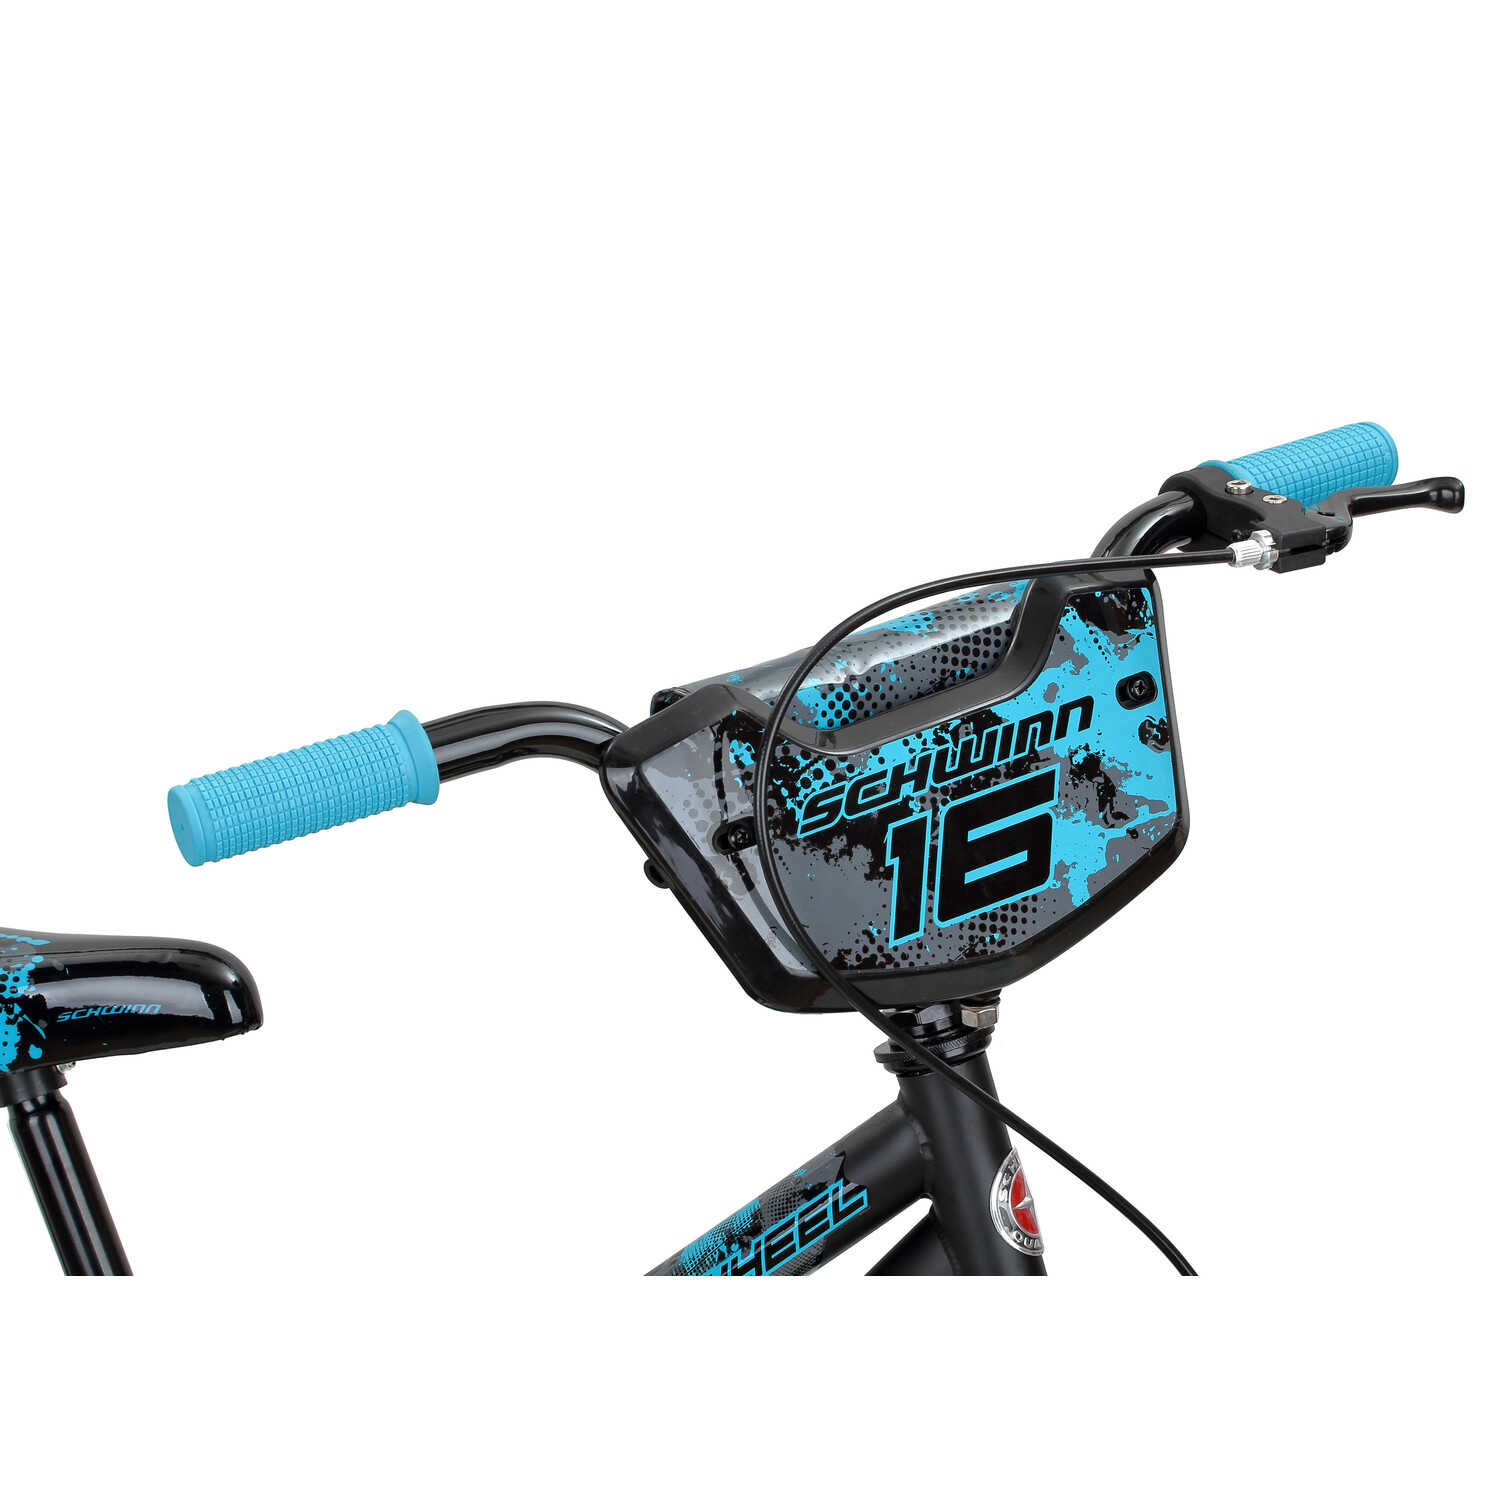 Schwinn Flywheel Smartstart Bike, 16 inch Wheels, Single Speed, Black/Blue - image 3 of 4